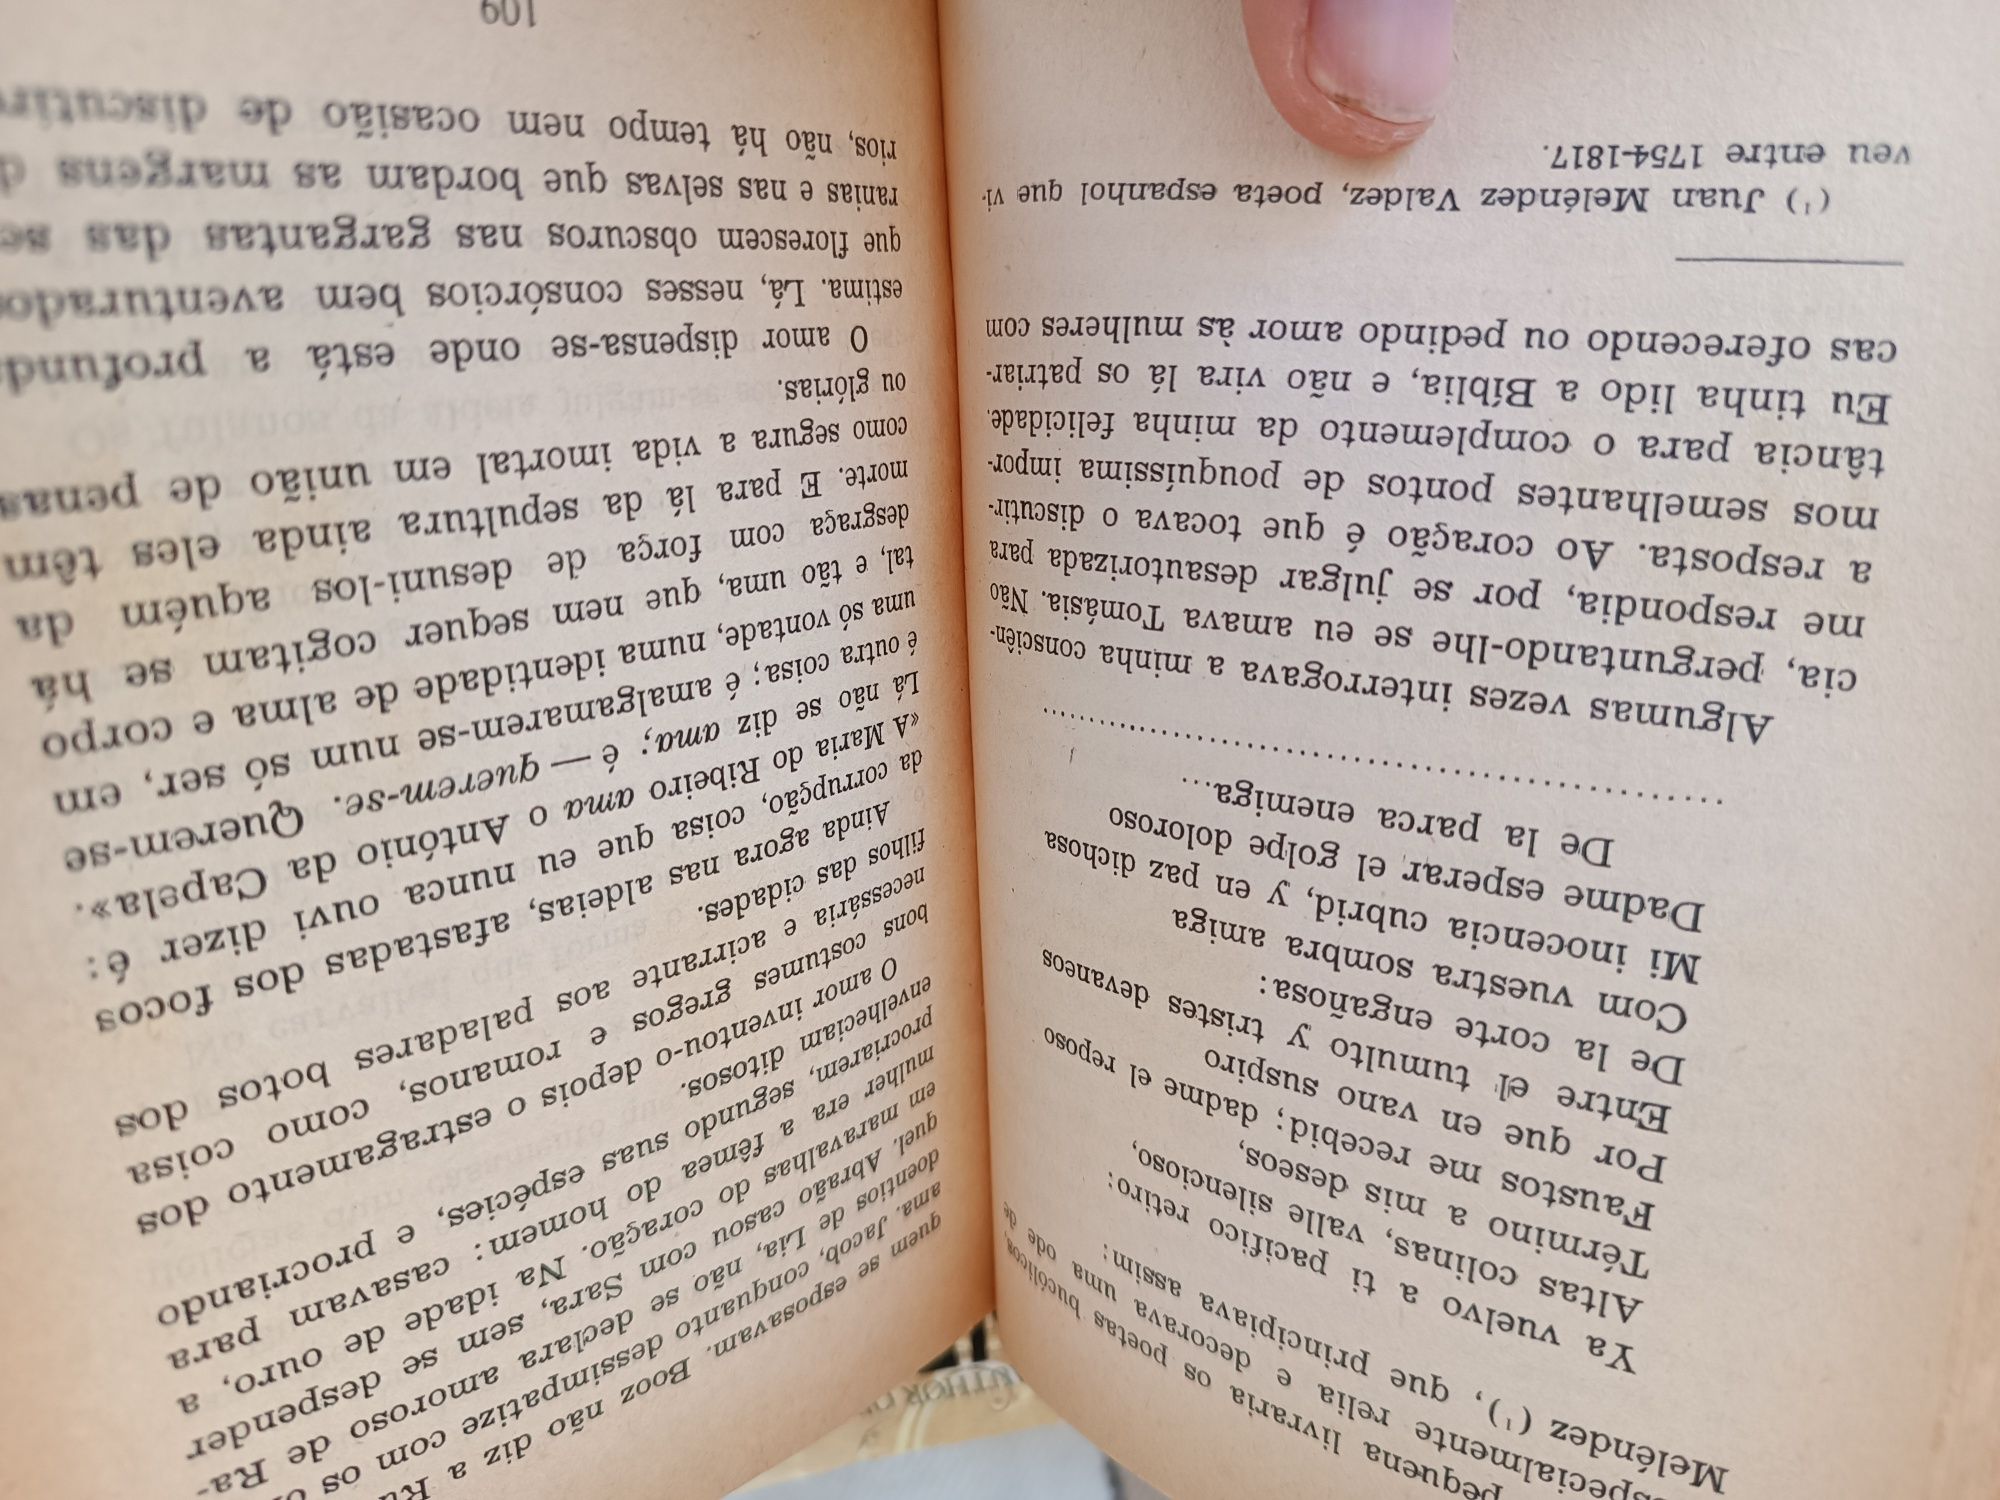 Livro Contos ao Serão - 1968 - Raro